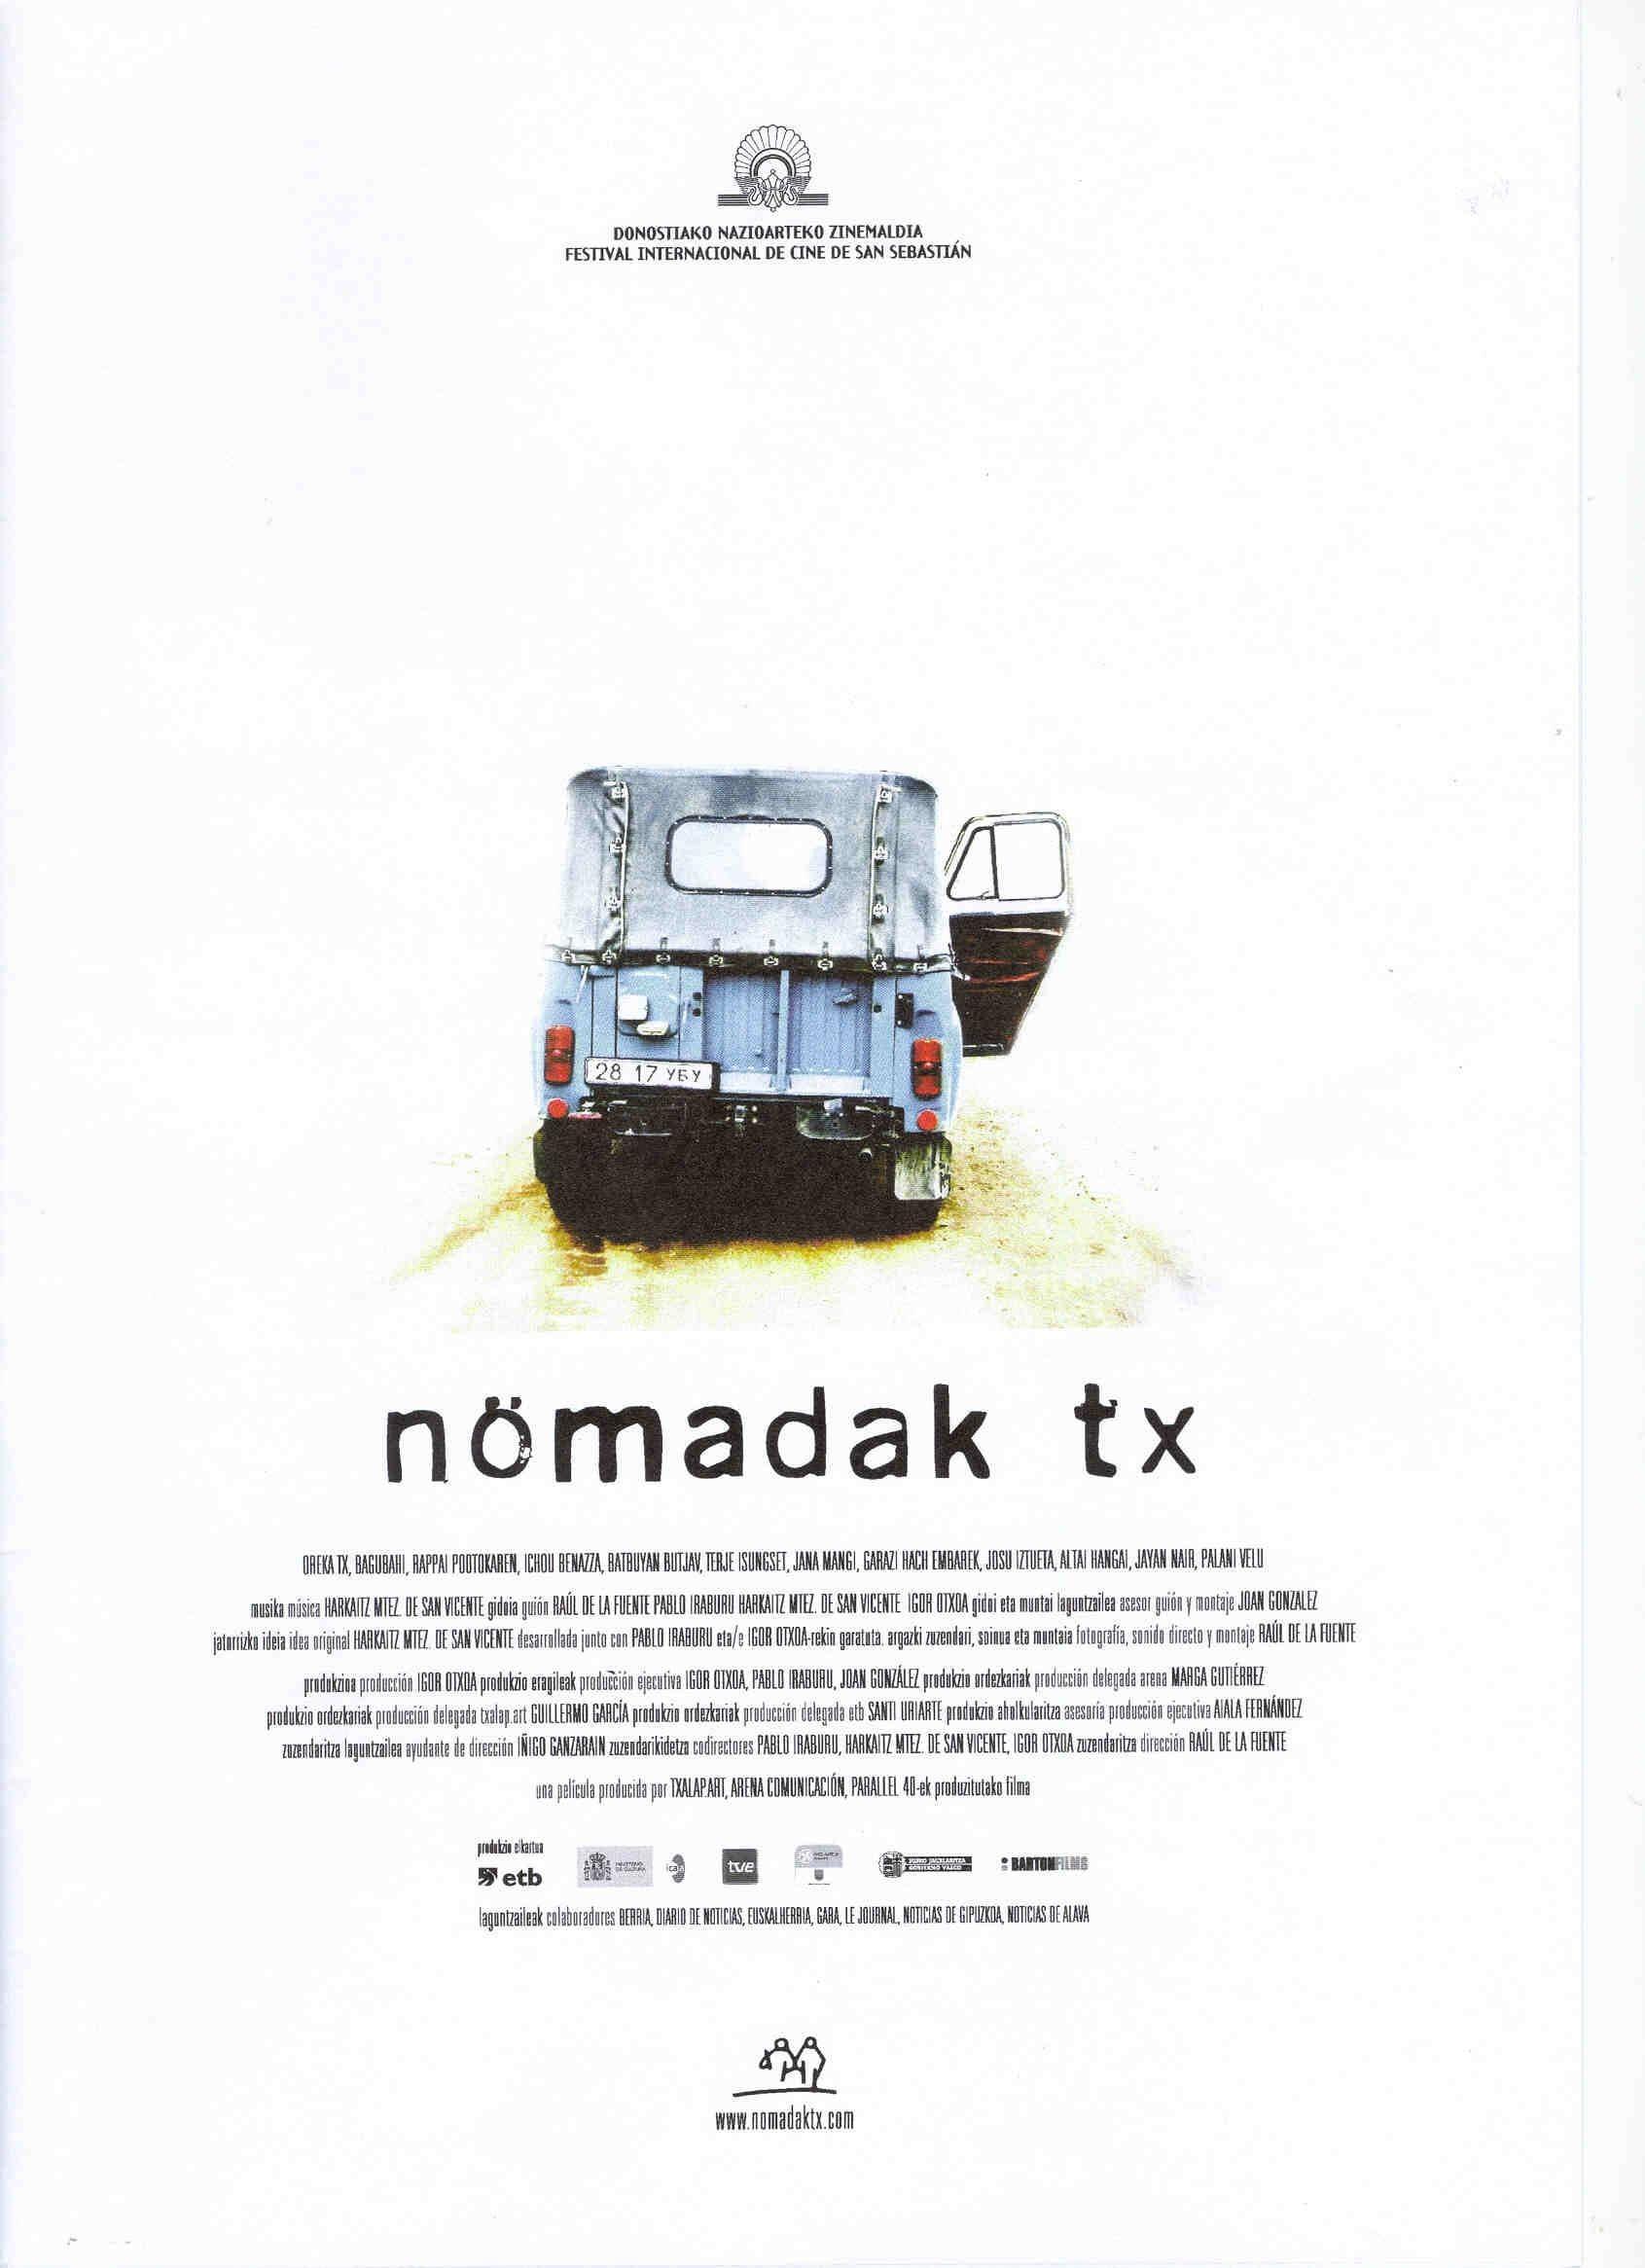 Nömadak Tx poster